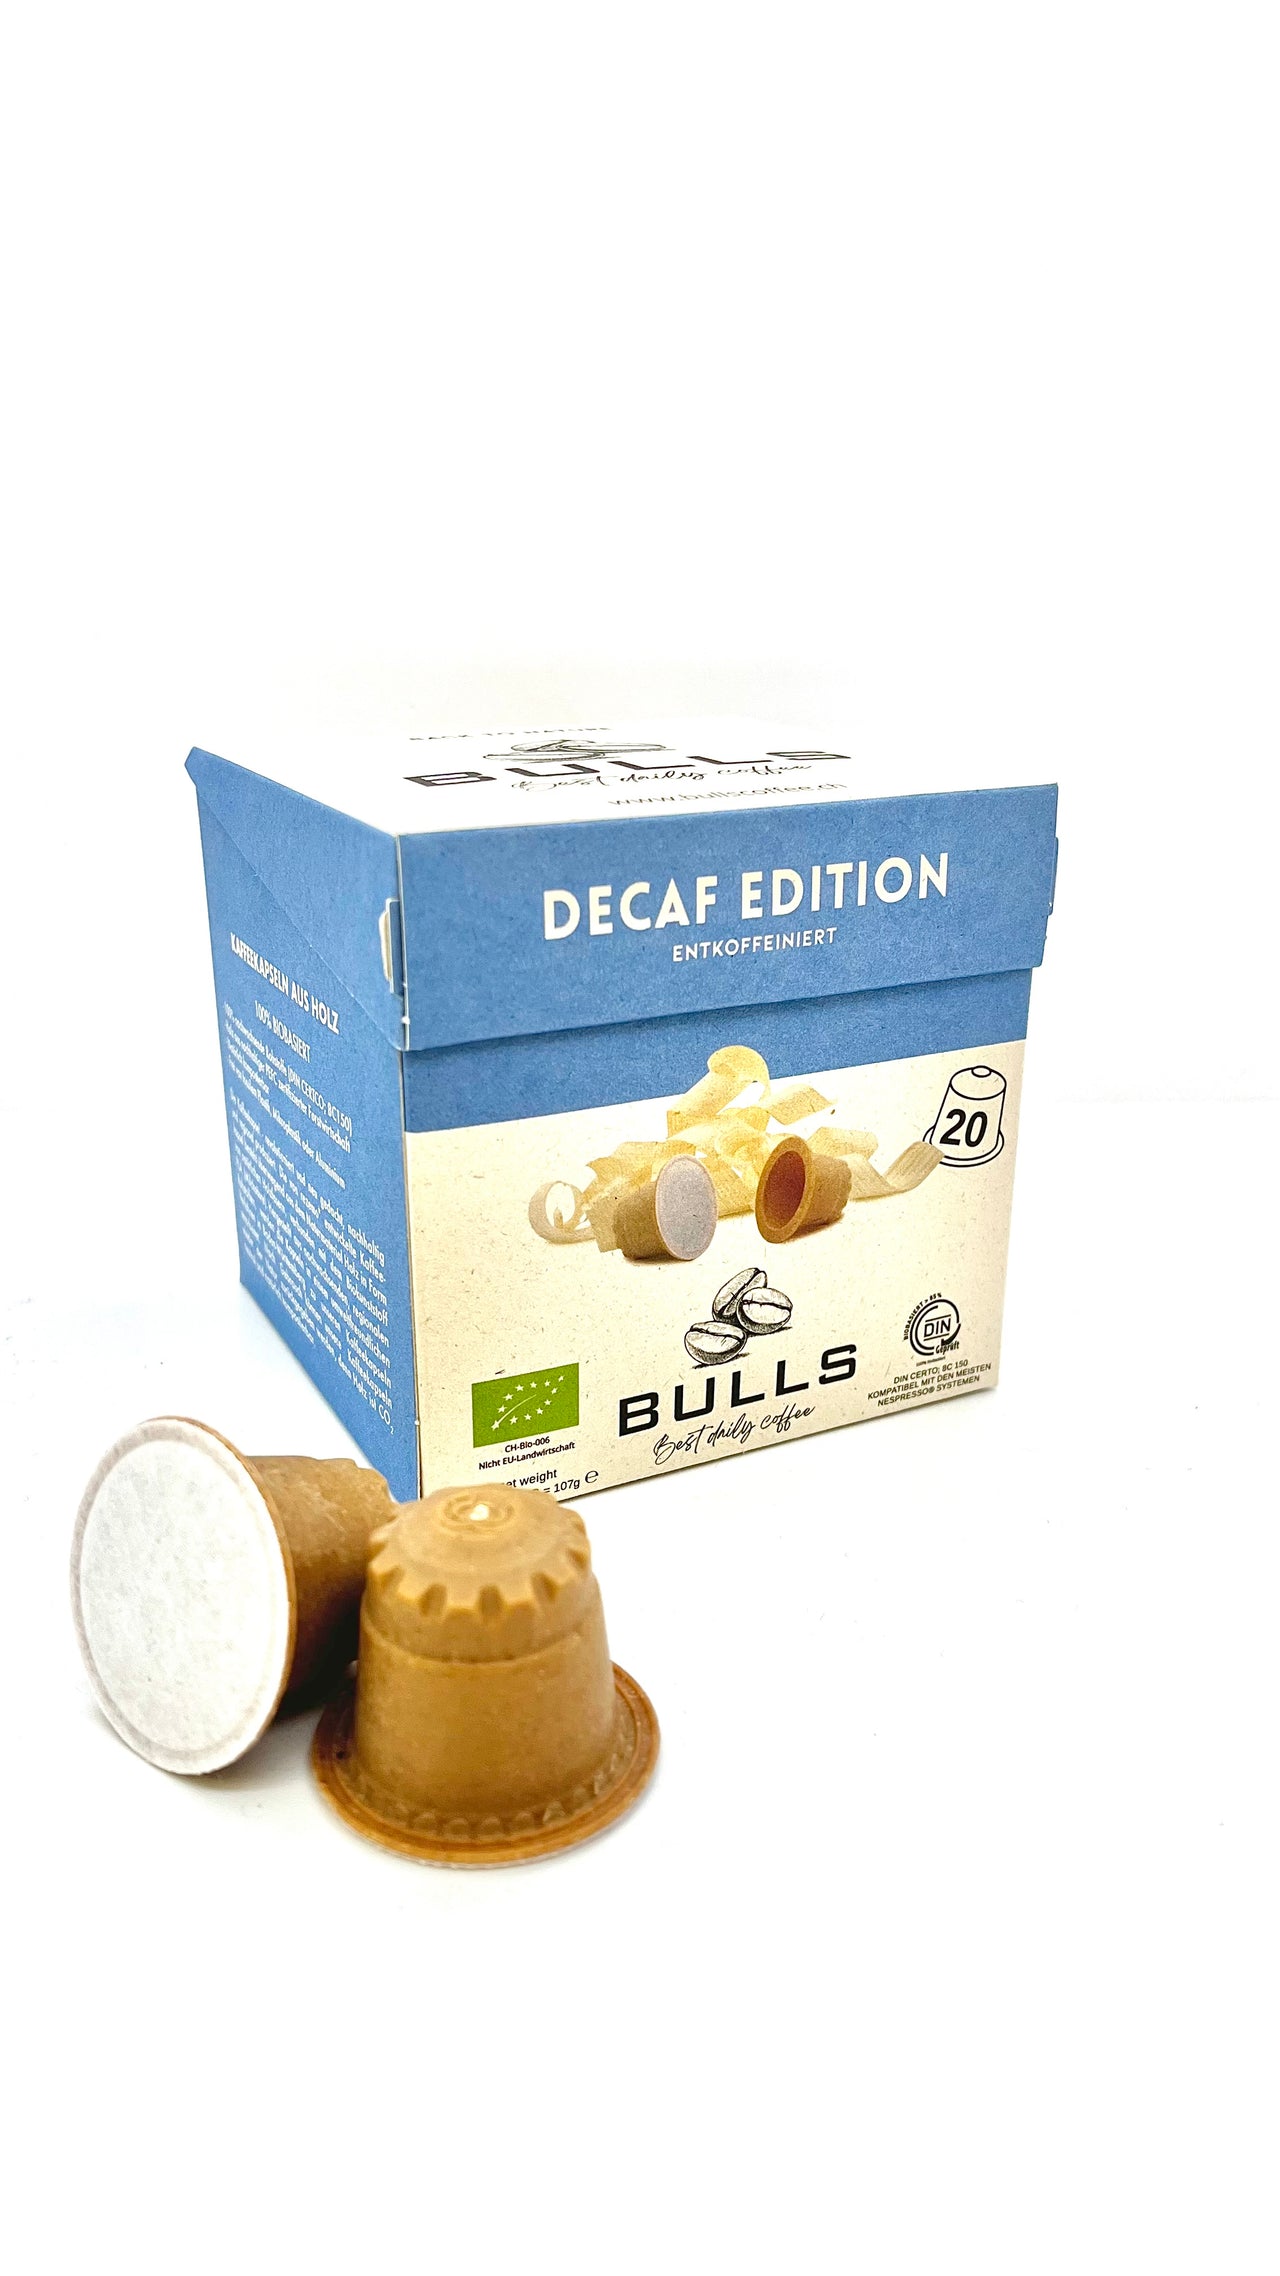 BULLS Decaf - Koffeeinfrei, entkoffeiniert - Holzkapseln